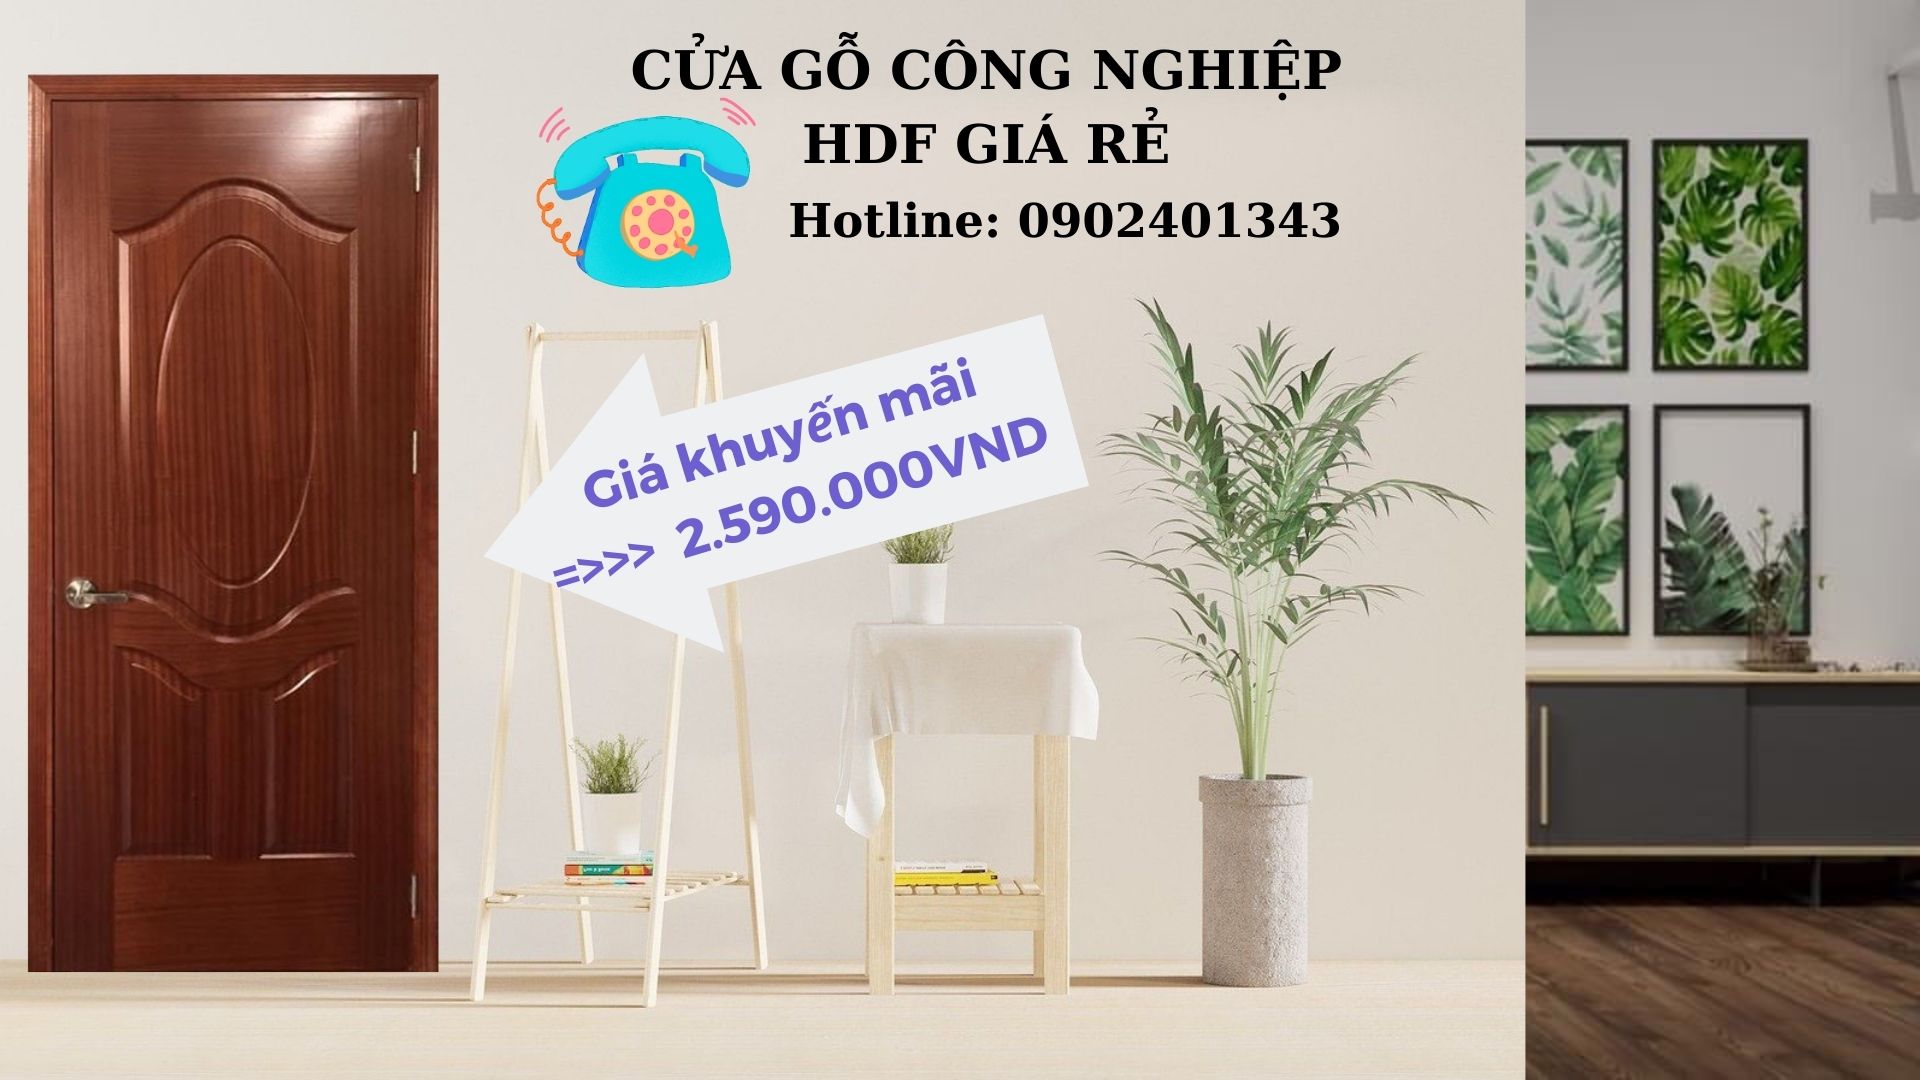 Giá Cửa Gỗ Công Nghiệp HDF Cho Phòng Ngủ | Hotline 0902401343